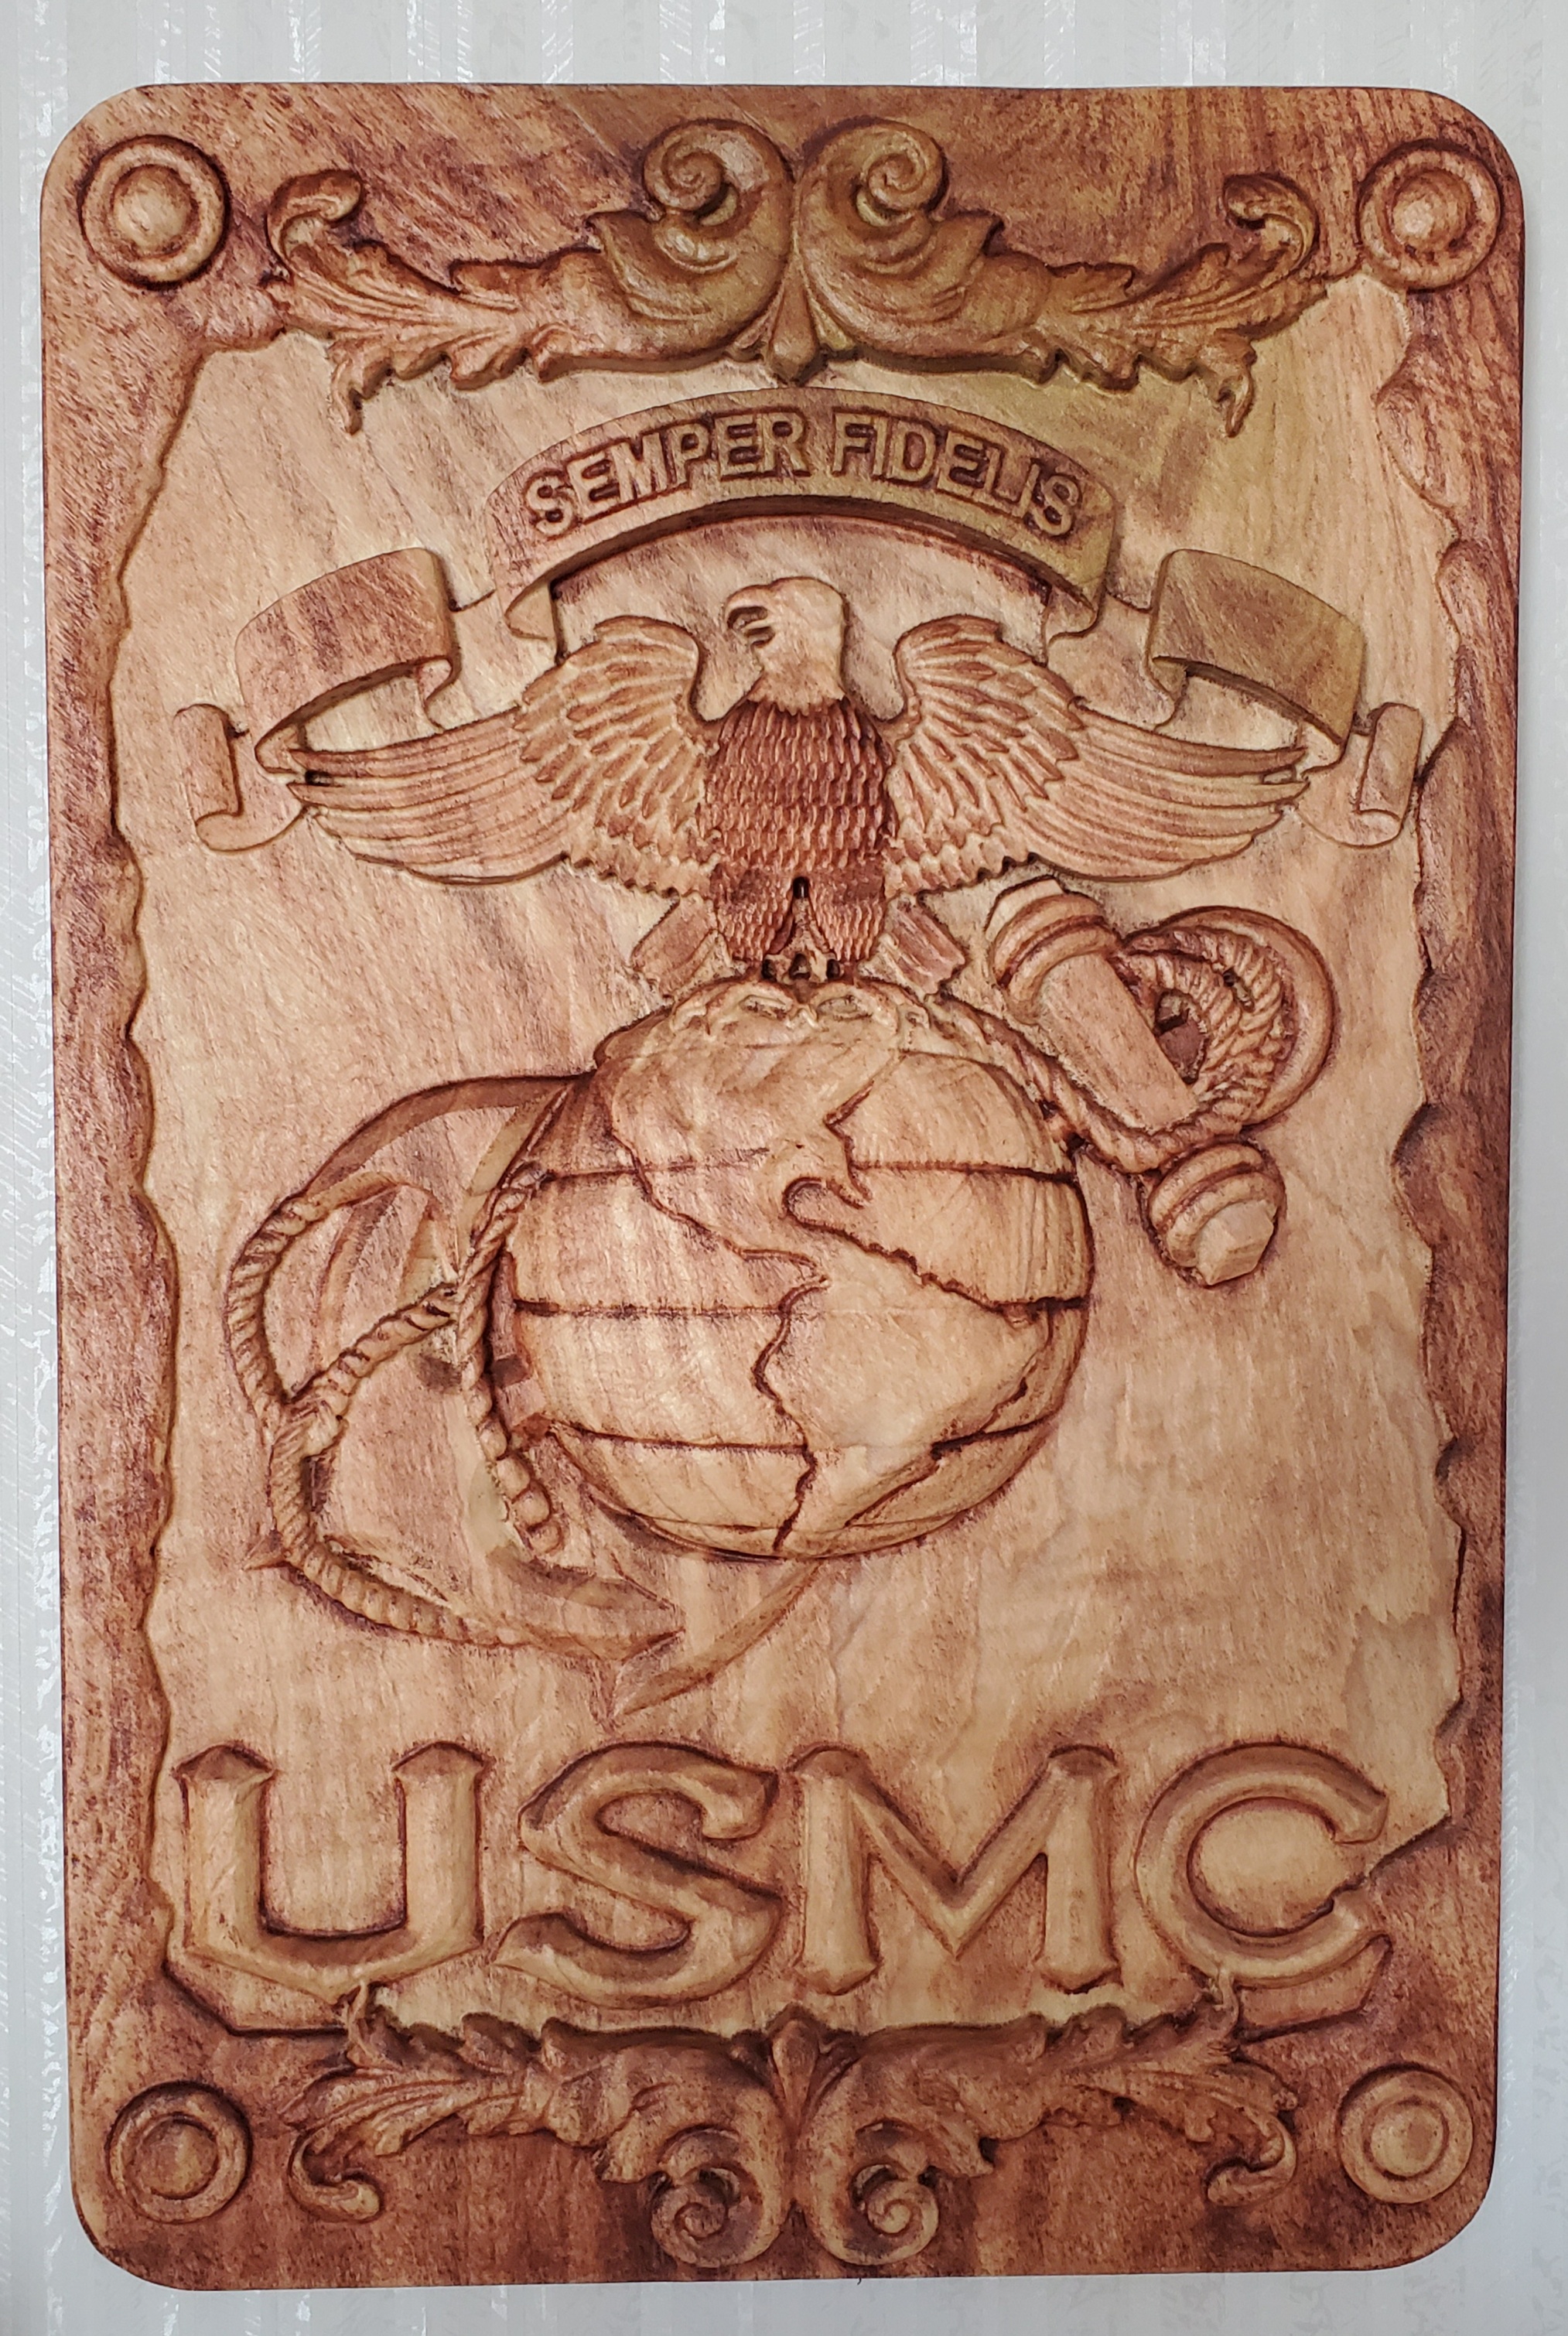 USMC "Semper Fidelis" Plaque